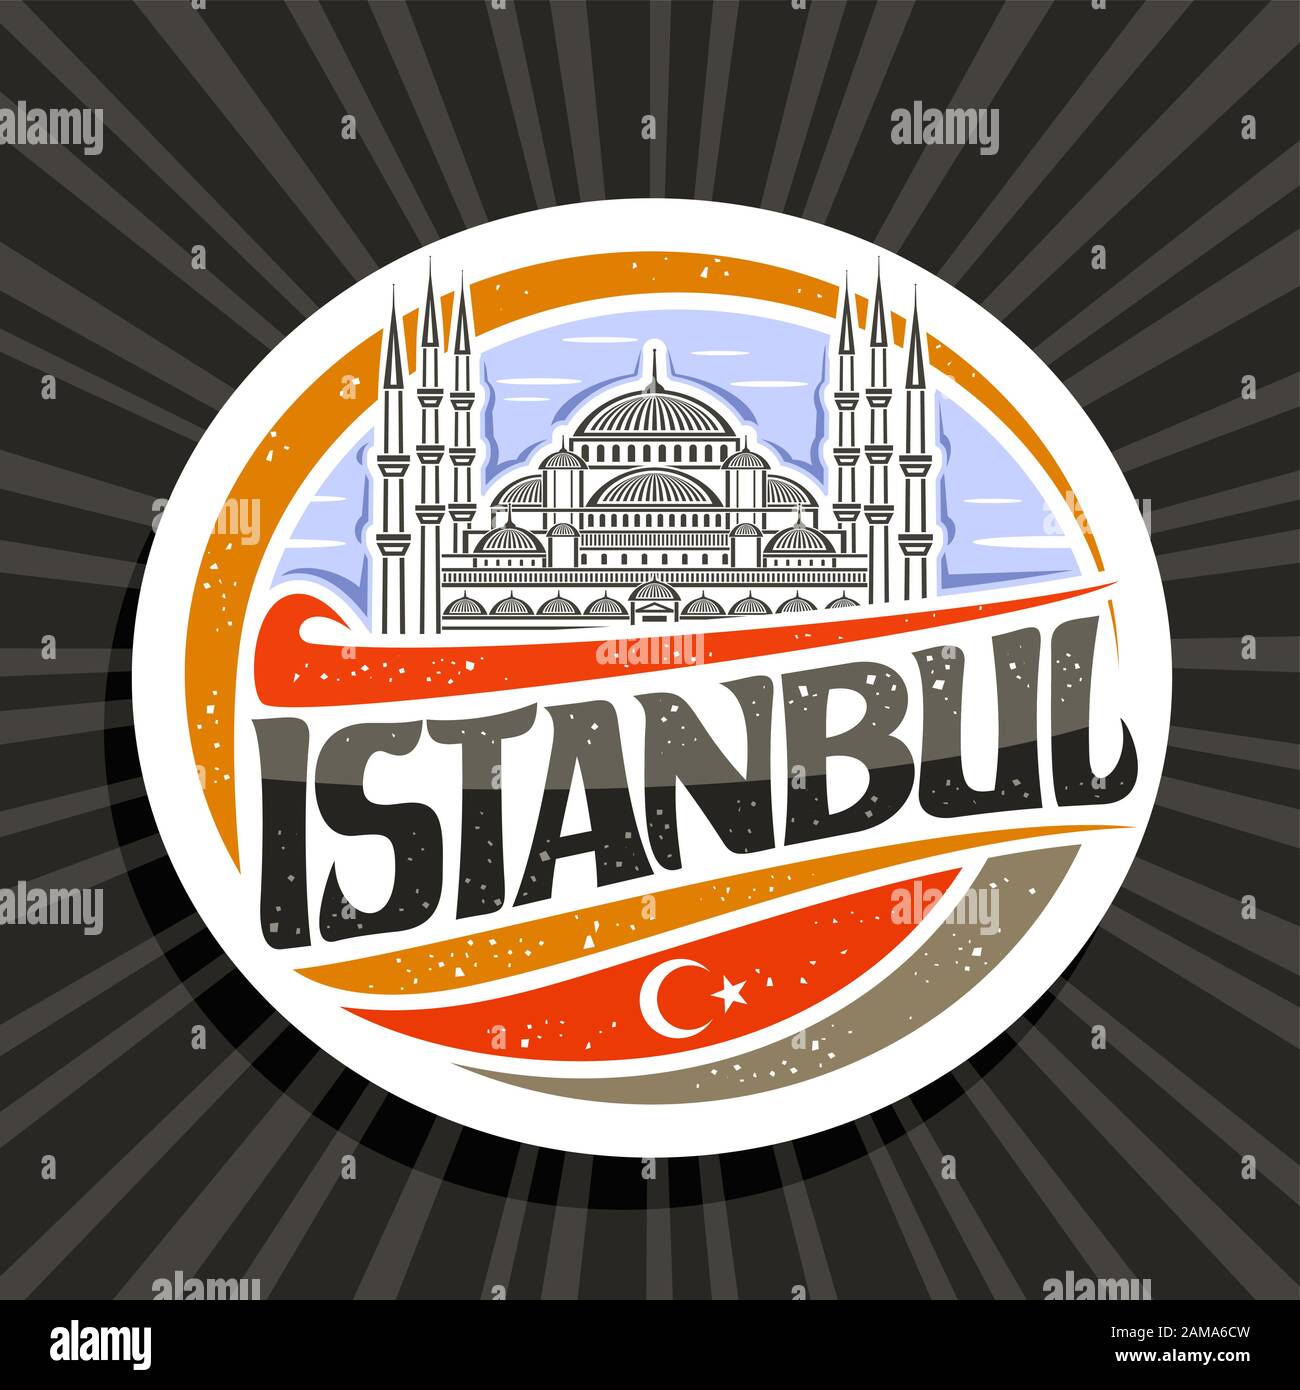 Vektorlogo für Istanbul, weißer dekorativer runder Tag mit Zeichenabbildung von Sultanahmet Camii auf Himmelshintergrund, touristischer Kühlschrankmagnet mit Bürsten s. Stock Vektor